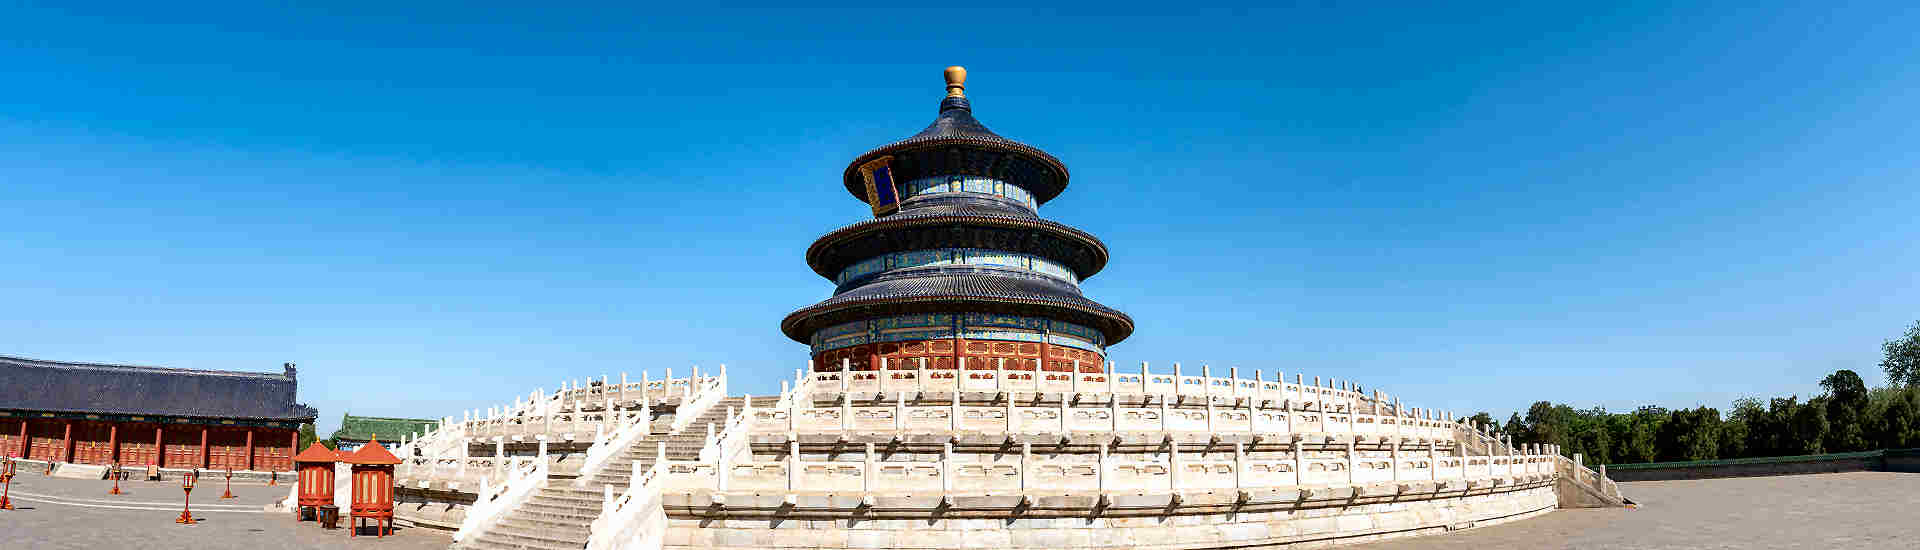 Bild des imposanten Himmelstempels in Peking, ein beeindruckendes Ziel für China Reisen